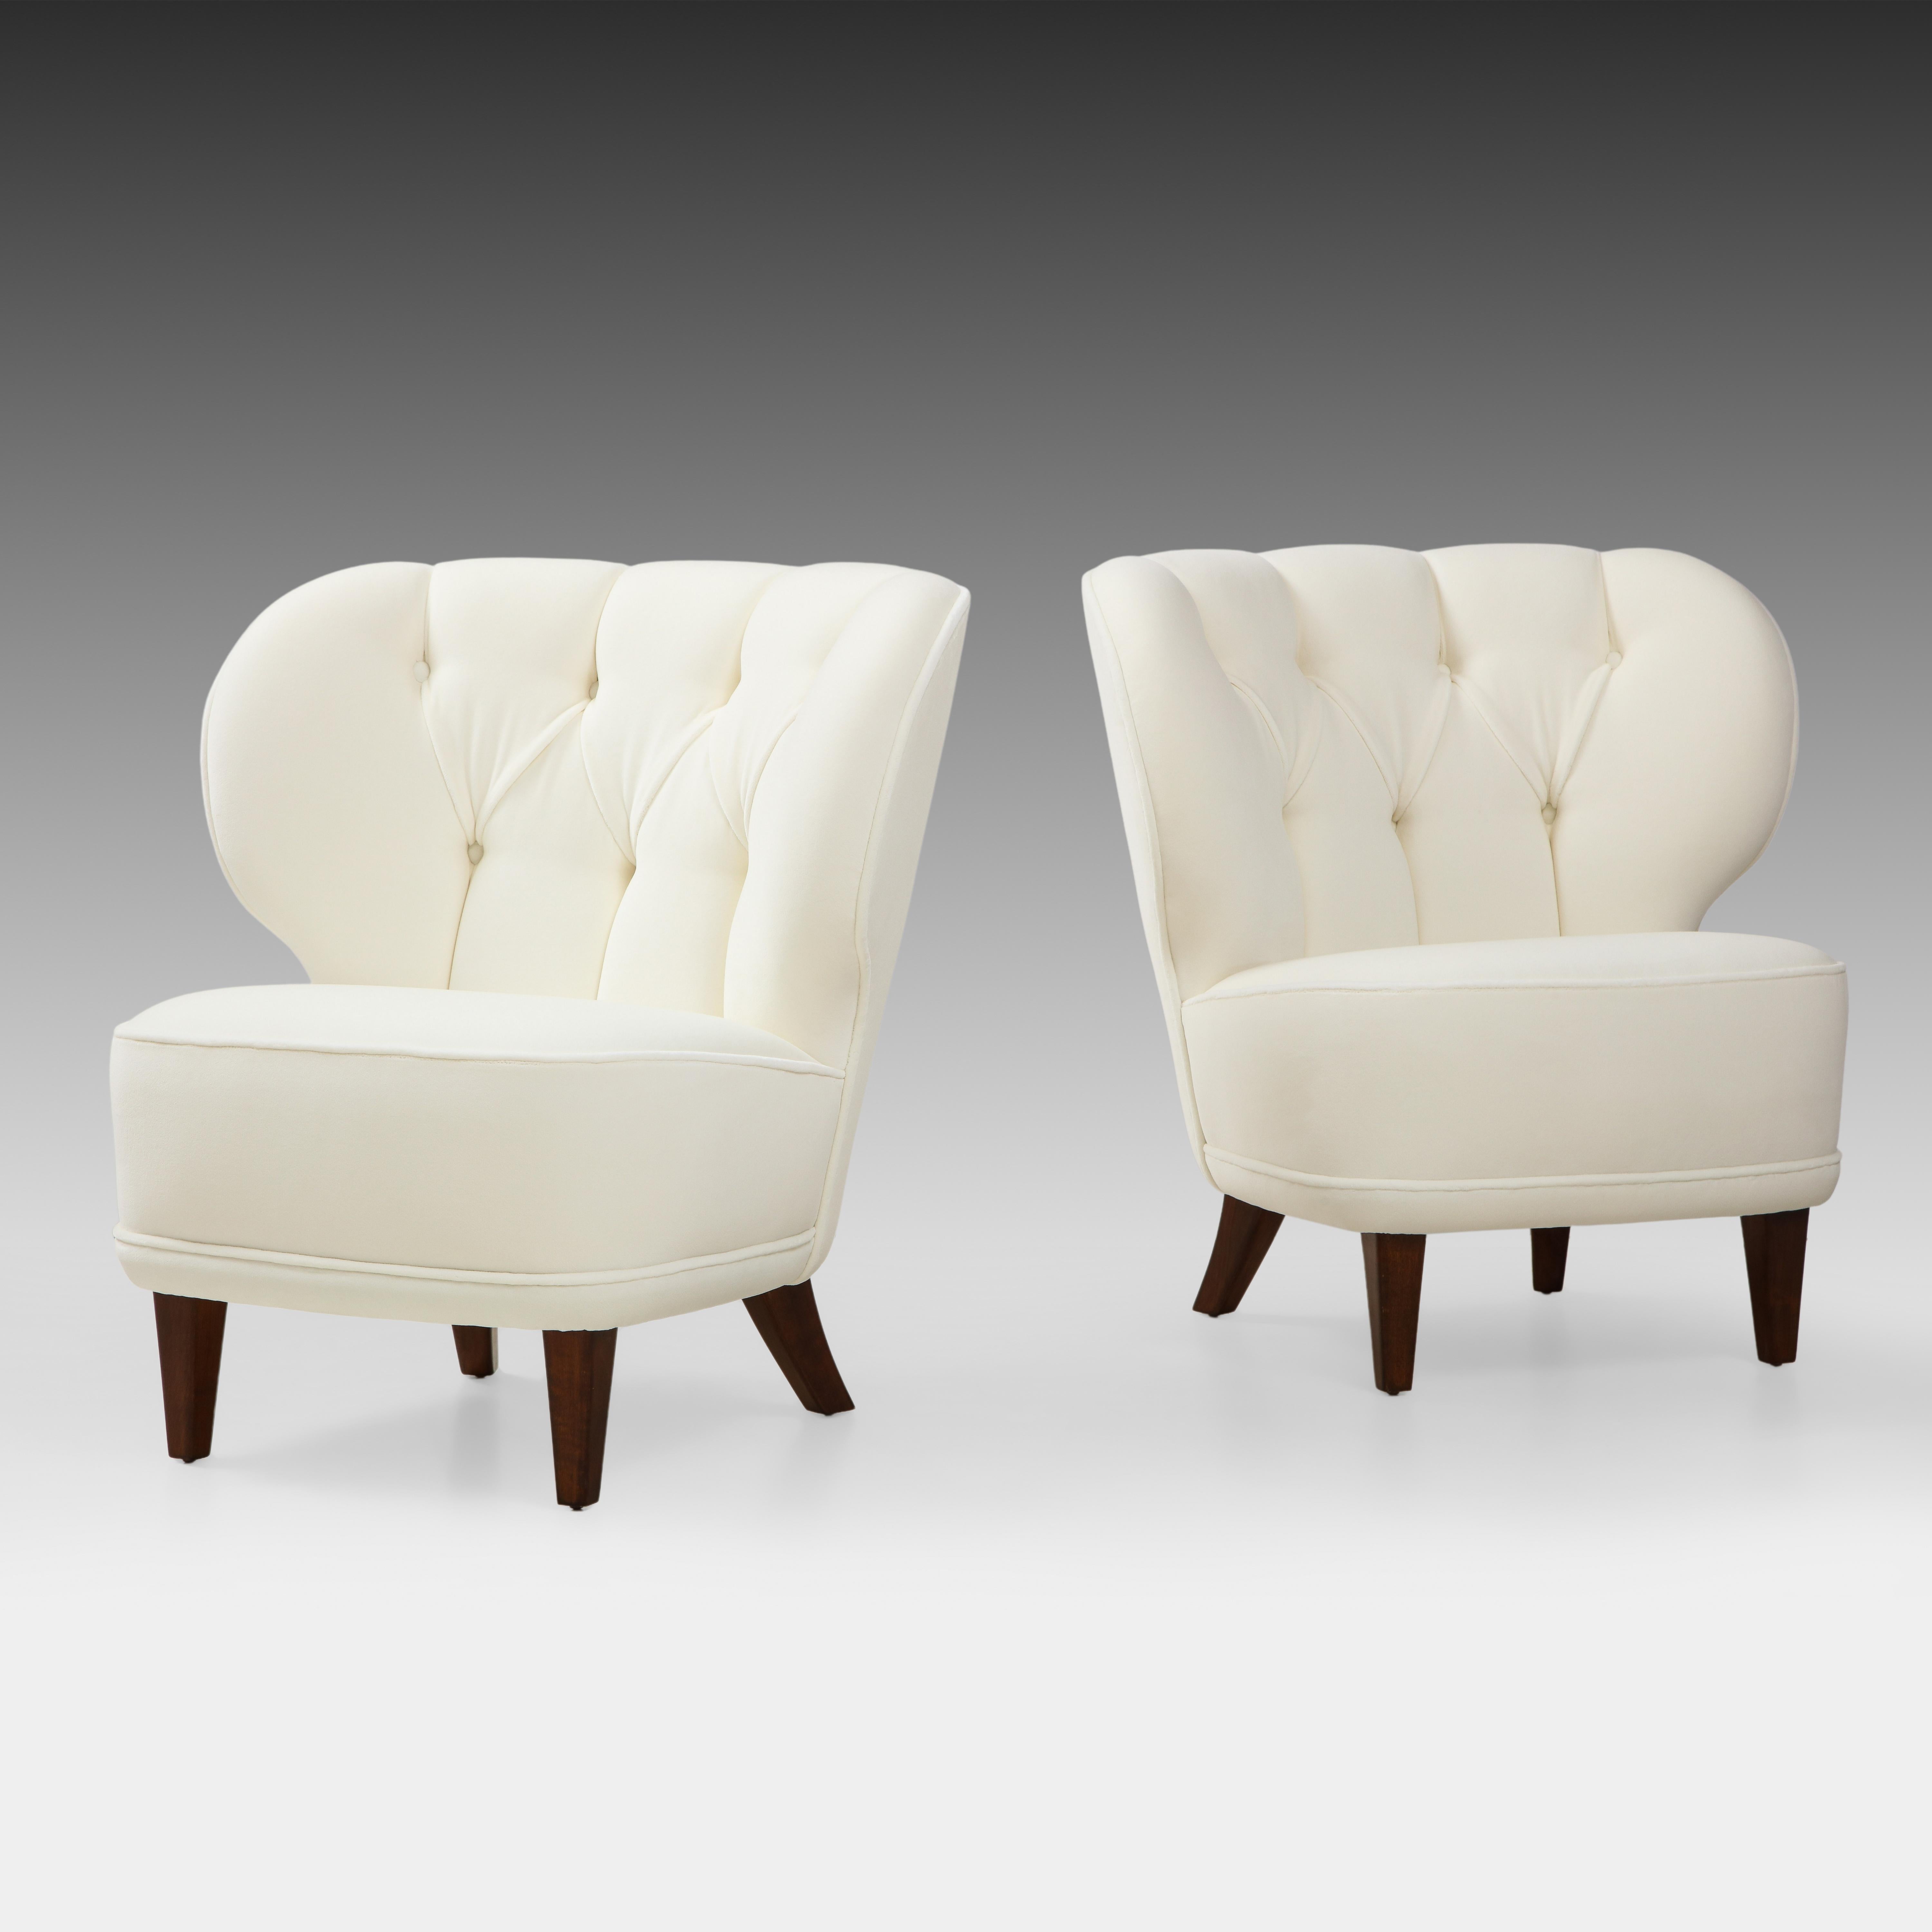 Carl-Johan Boman für Oy Boman AB Seltenes Paar Sessel aus elfenbeinfarbenem Samt mit elegant geschwungenen, getufteten Rückenlehnen und spitz zulaufenden Beinen aus gebeiztem Ahornholz, Finnland, 1940er Jahre. Diese exquisiten Stühle haben eine